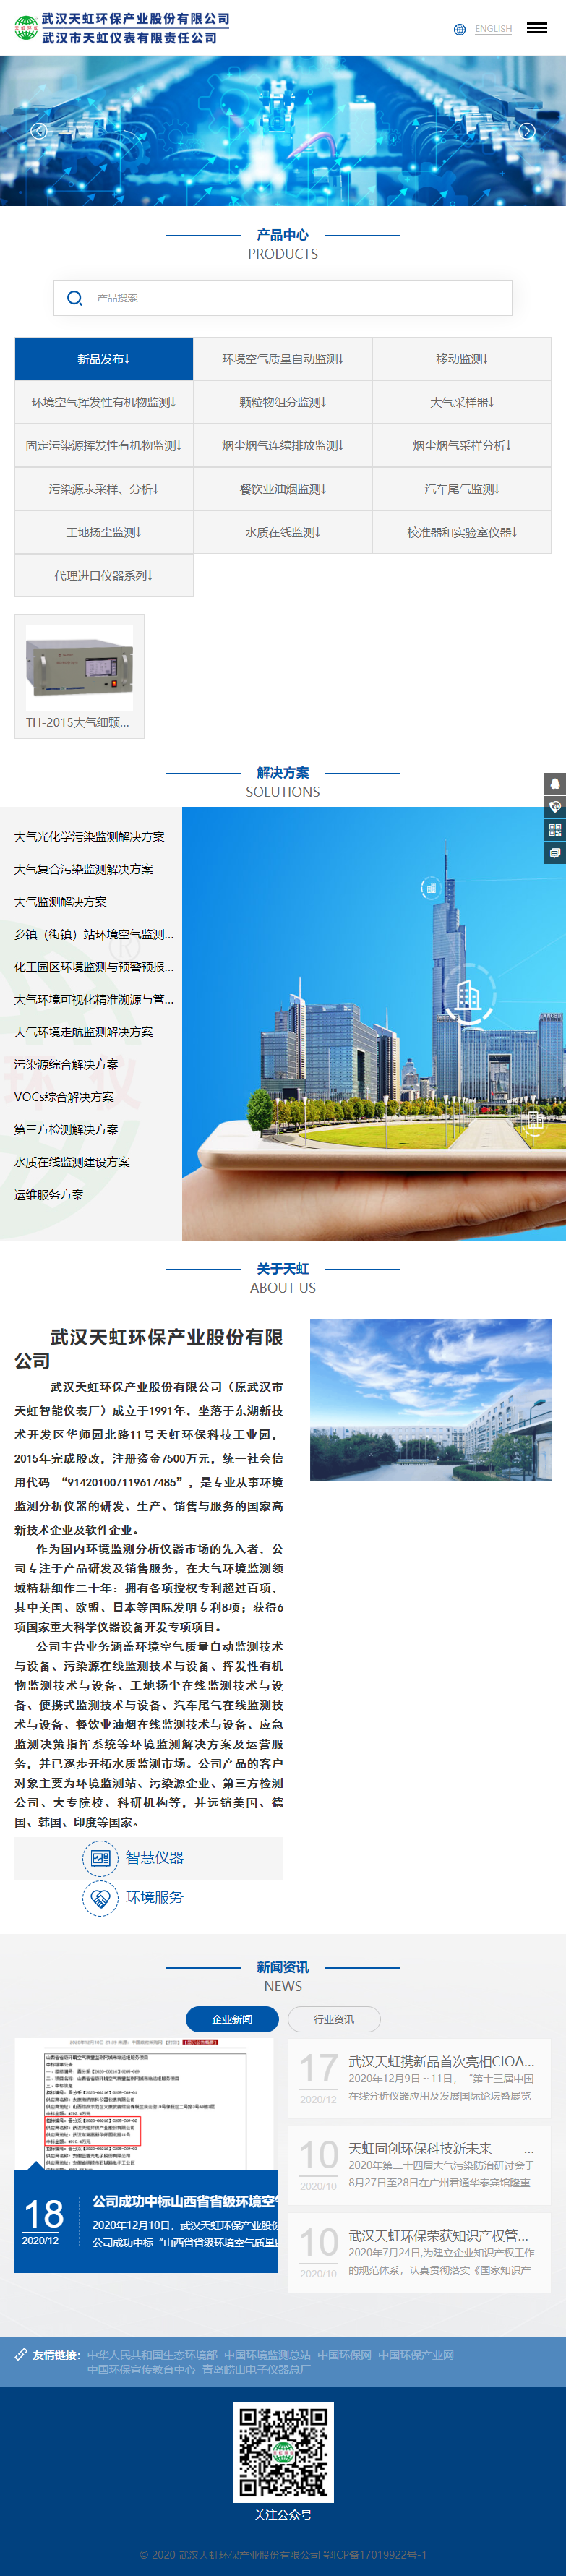 武汉天虹环保产业股份有限公司网站案例